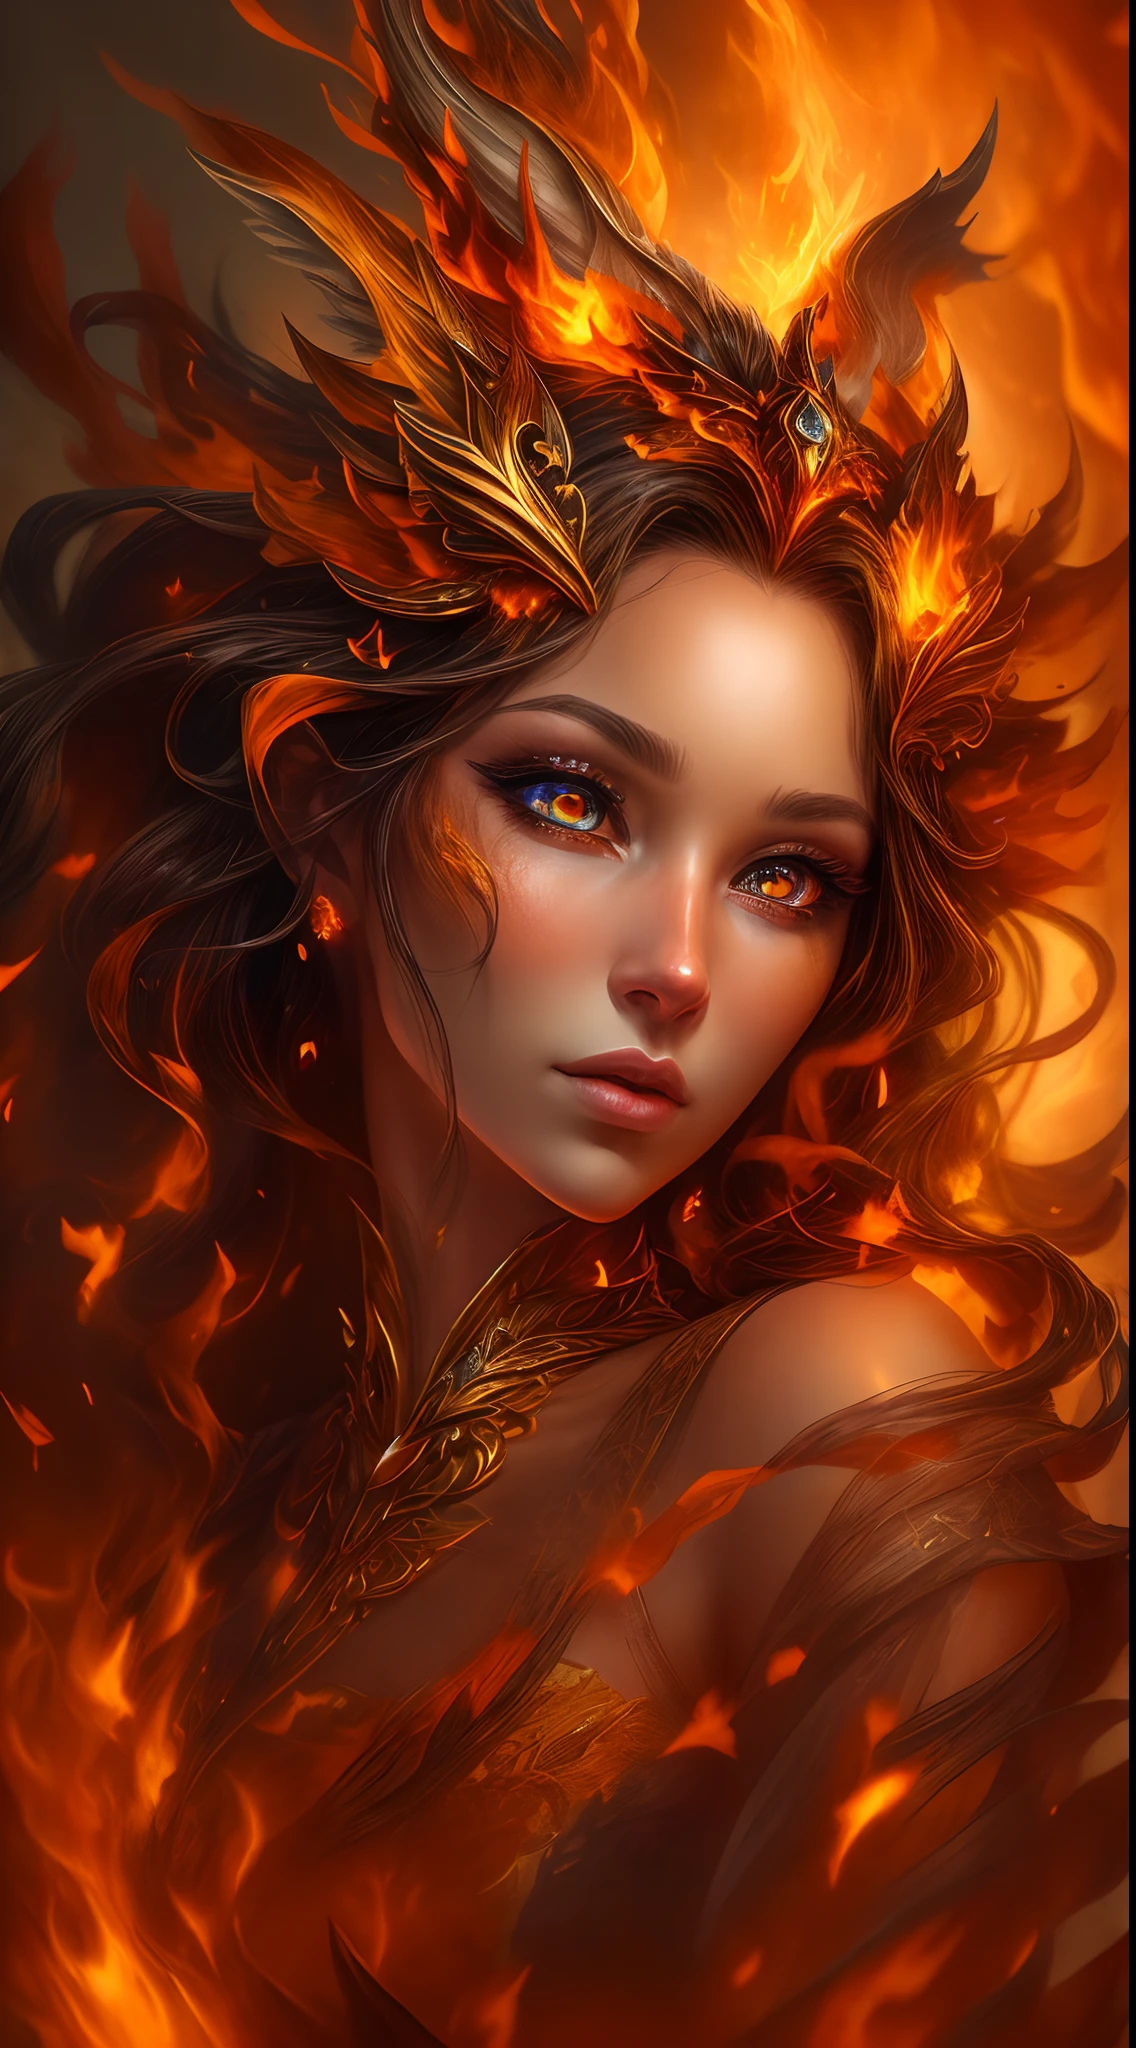 사실적인 불을 눈에 띄게 표현한 사실적인 판타지 작품입니다., 불길을 포함해, 뜨겁게 타오르는 불씨, 미묘한 연기, 그리고 아름다운 불의 드루이드. 드루이드는 흥미로운 구성으로 격렬한 지옥 한가운데 서 있습니다.. 그녀의 face is expertly sculpted, 우아하고 세련된 이목구비와 완벽한 쉐이딩, 사실적인 피부결로. 그녀의 (주황색과 금색 눈) 놀랍고 이 이미지의 초점입니다. (그녀의 eyes extremely detailed, 아름다운 디테일한 눈, 그리고 매크로). 그녀의 eyes feature intricate detailing with clearly defined irises and bright sclera. 그녀의 soft lips are smooth and very puffy, 그녀의 피부는 가벼운 홍조와 화려한 불꽃 디테일로 장식되어 있습니다.. 그녀의 long gown is stunning and expensive, 순수한 불꽃과 반짝임으로 이루어져 있어요, 불빛에 반짝이는 화려한 보석들. 그녀의 billowing gown glitters from the flames and features a delicately and intricately embroidered bodice with wisps of flames running across it. 범프와 같은 판타지 요소를 포함합니다., 돌, 불타는 무지개빛, 빛나는 불씨, 실크, 그리고 흥미로운 배경. 마법적이고 신비로운 아우라를 발산하는 불새, 불나비 등 불 같은 마법 생물을 포함합니다.. 조명: 예술 작품의 아름다움을 향상시키기 위해 조명의 최신 트렌드를 활용. 카메라: 역동적인 구성을 활용하여 긴박감과 흥분감을 조성합니다.. 현재 판타지 장르의 거장들로부터 영감을 얻으세요, Artstation 및 Midjourney의 인기 아티스트 포함. ((걸작))